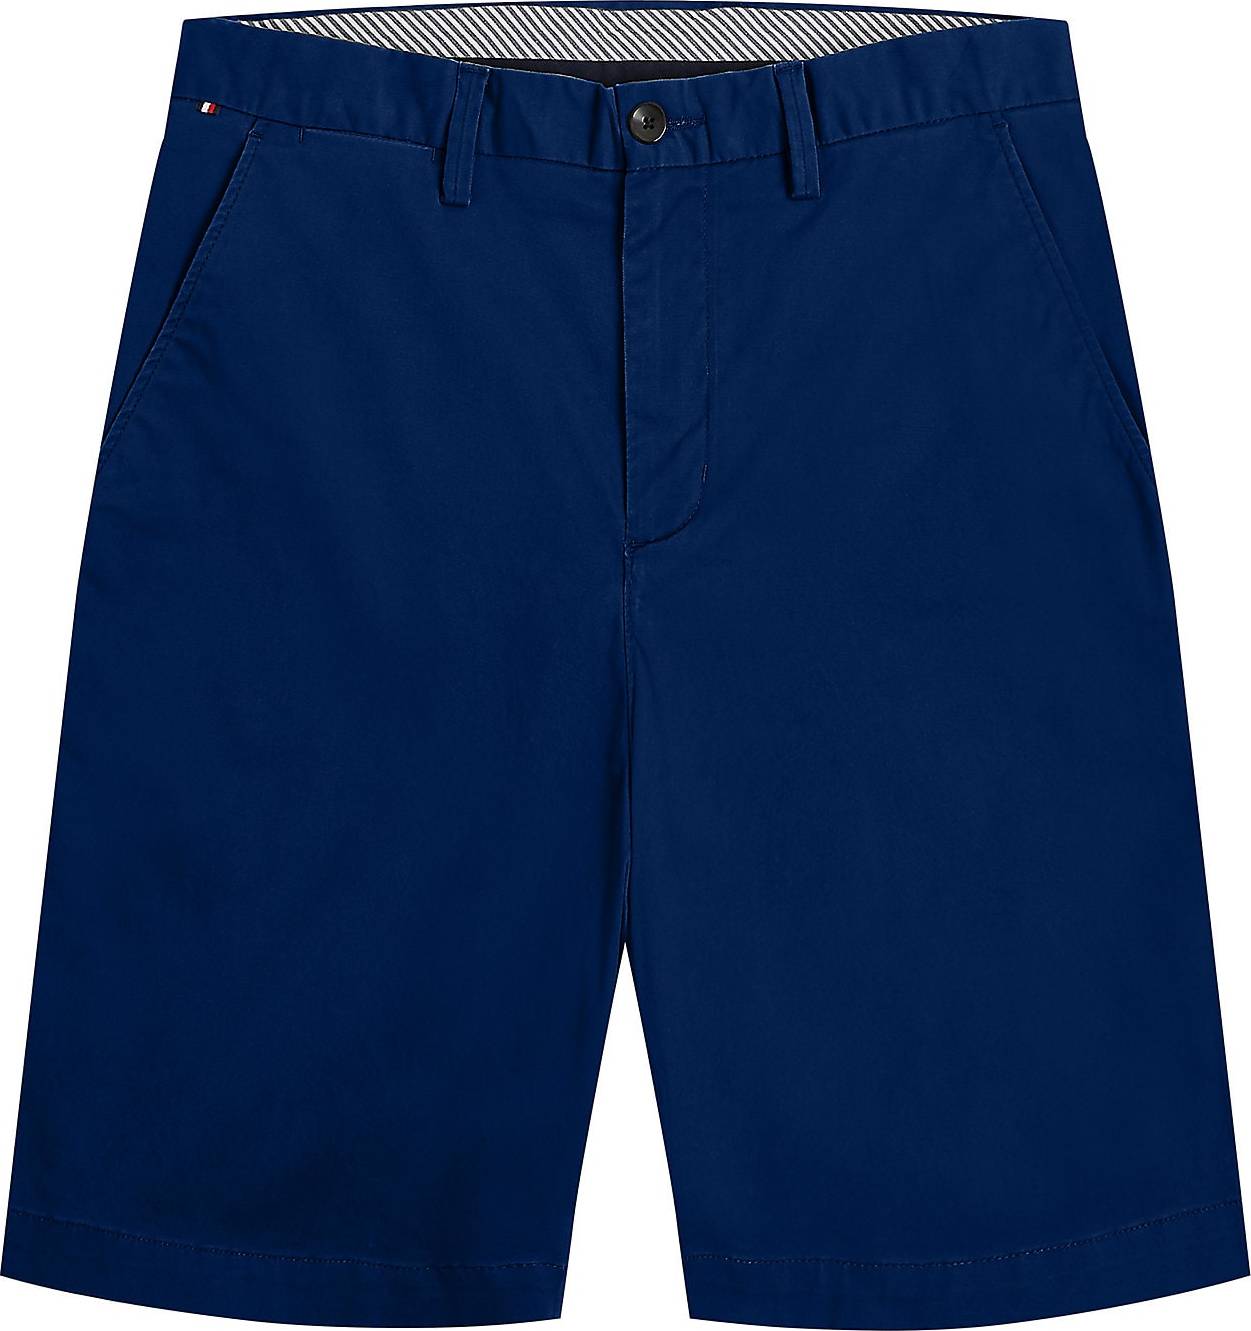 Chino kalhoty 'Harlem' Tommy Hilfiger marine modrá